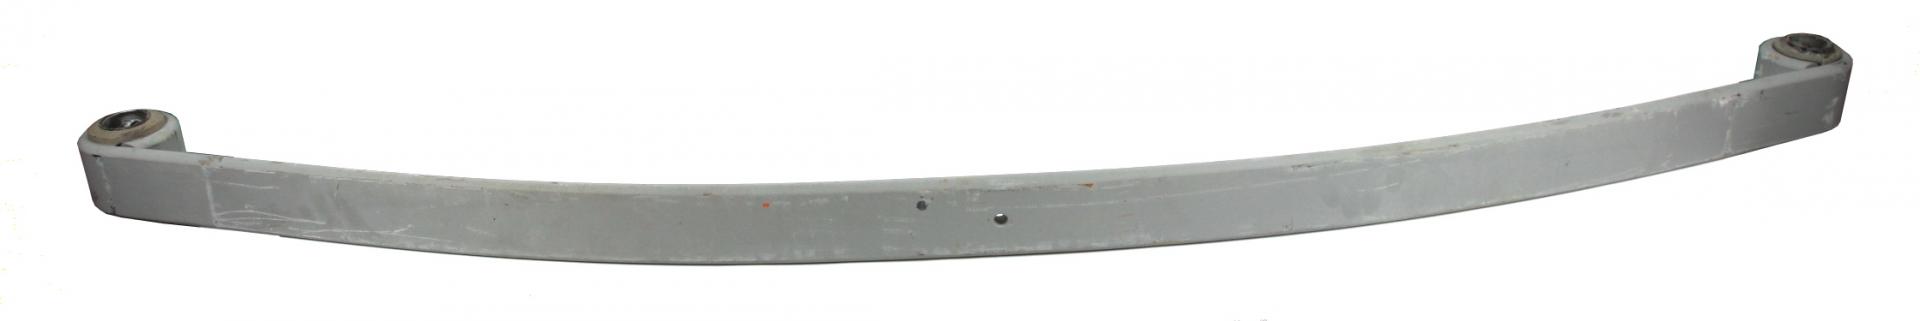 Рессора передняя коренная DB 1114-1524 (1/19mm) (80/860/860)